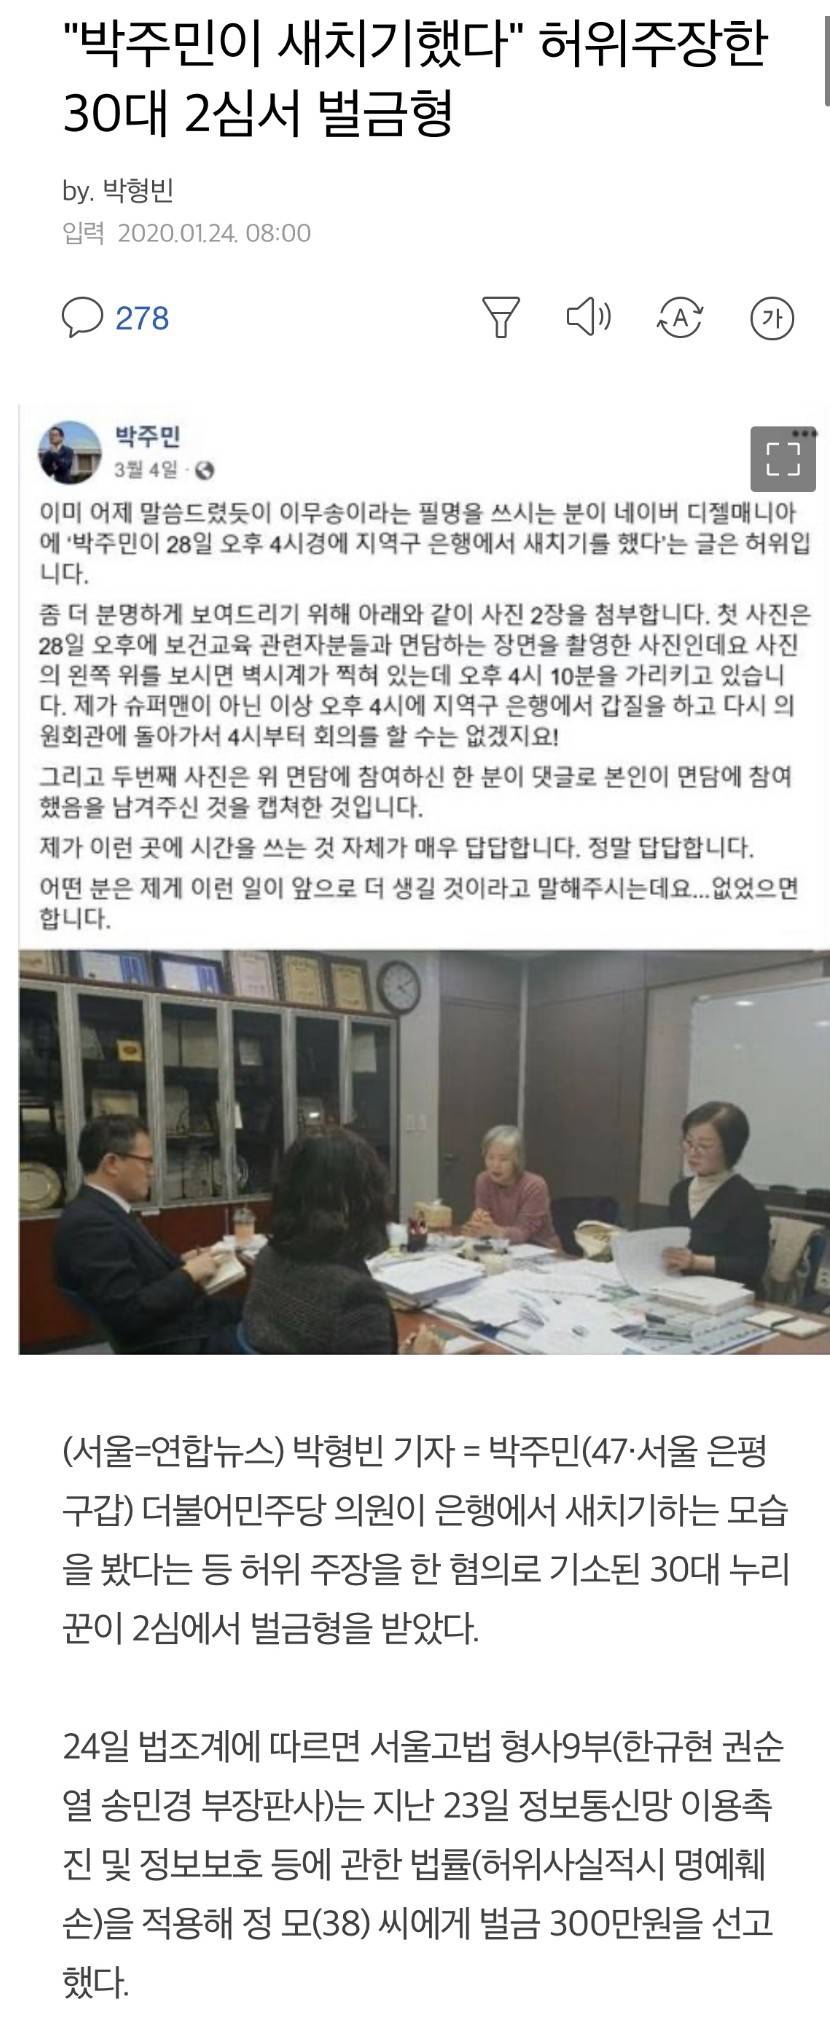 "박주민이 새치기했다” 허위주장한 30대 2심서 벌금형 | 인스티즈